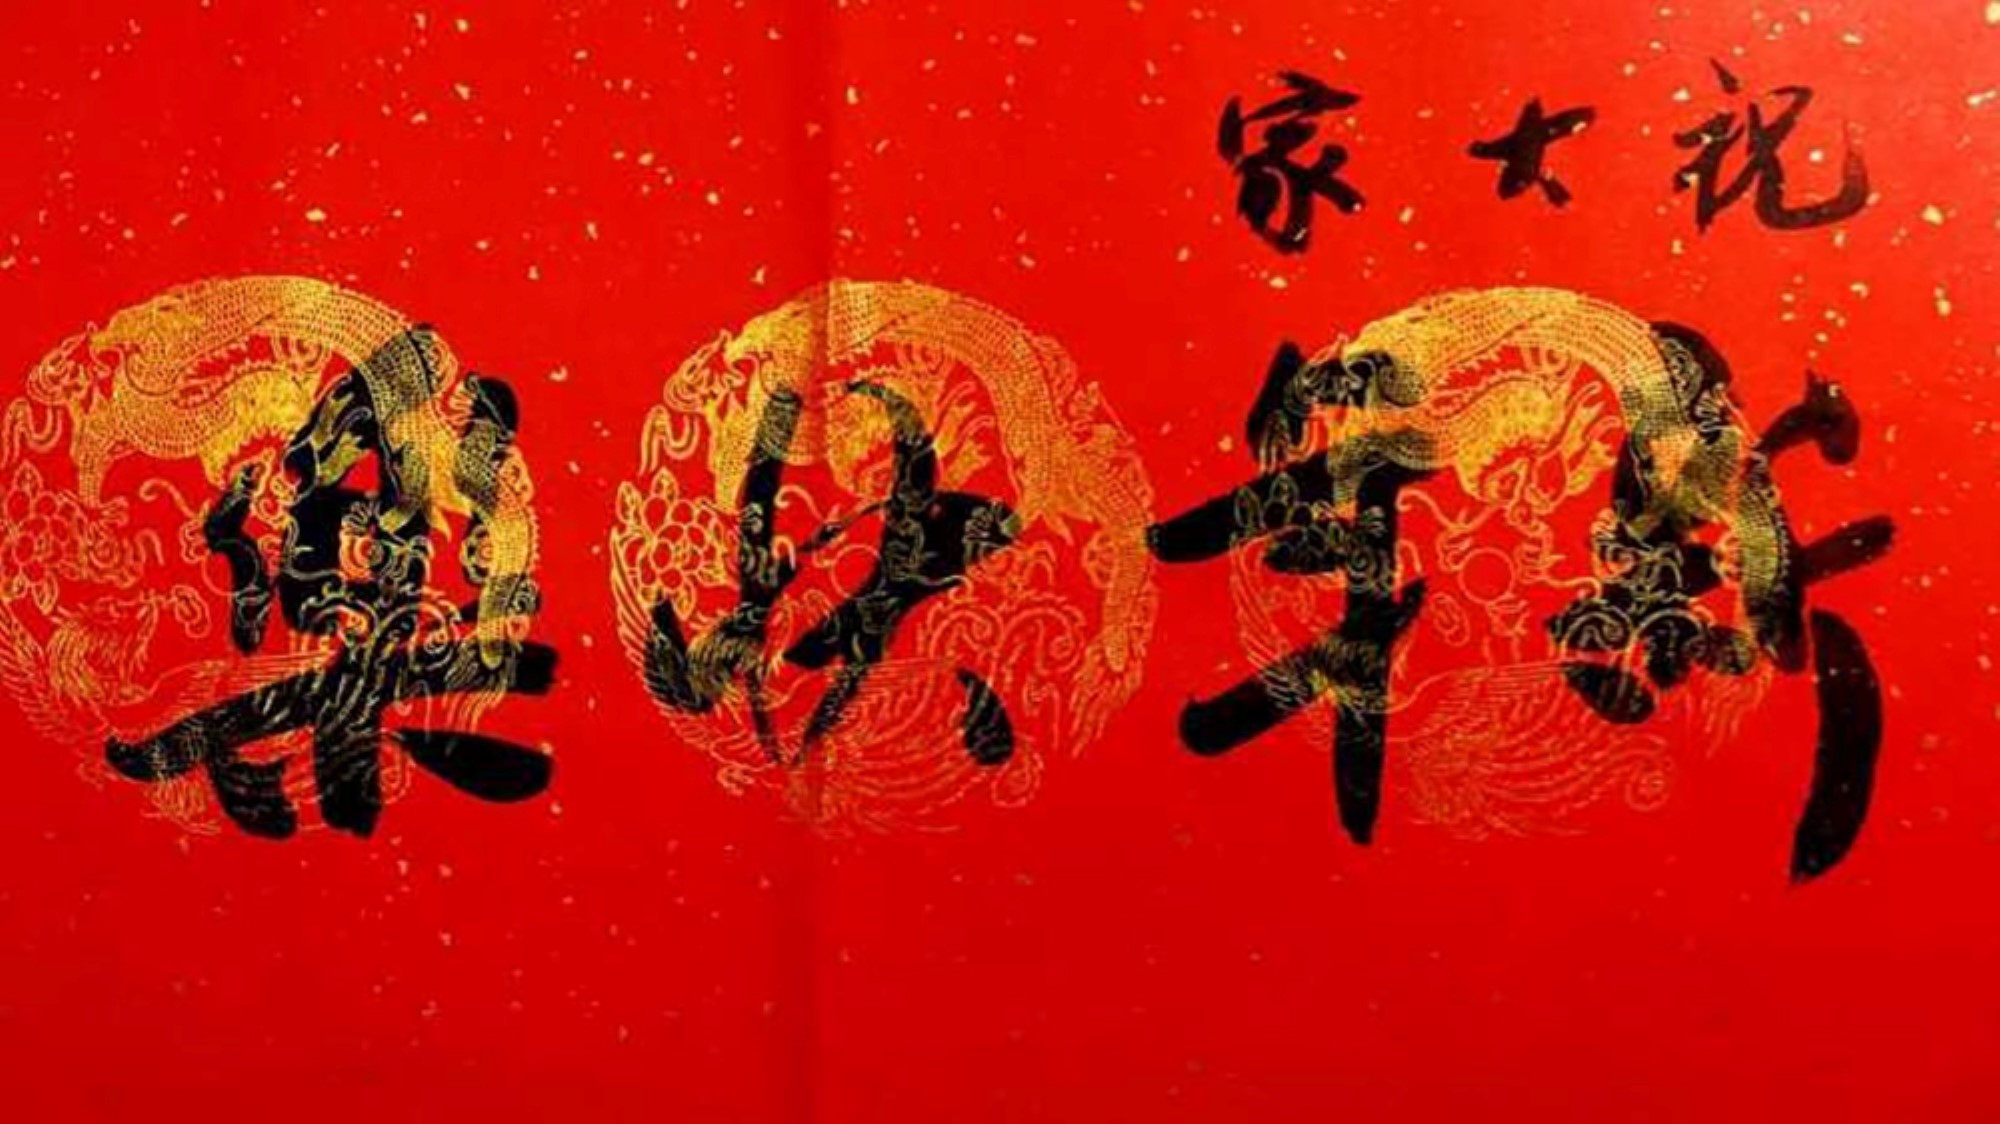 "Godt nyttår" skrevet på kinesisk med kalligrafi